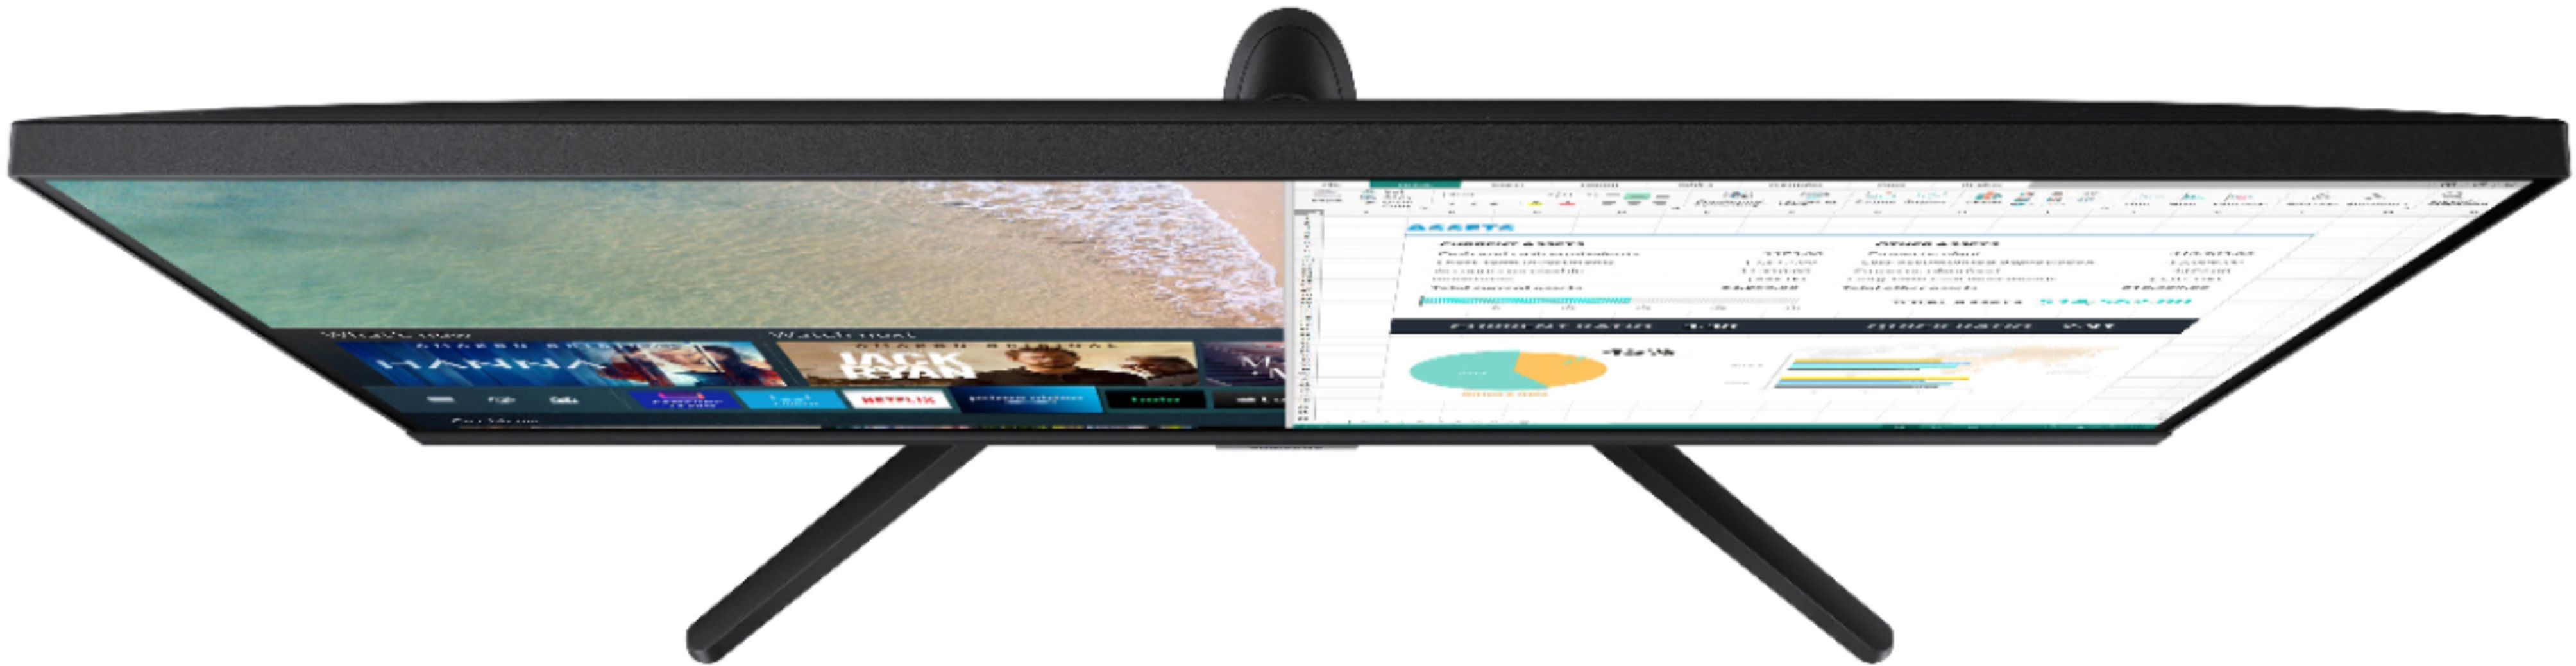 Best Buy: Samsung 24 Class (23.5 Diag.) LED 720p Smart HDTV UN24M4500AFXZA